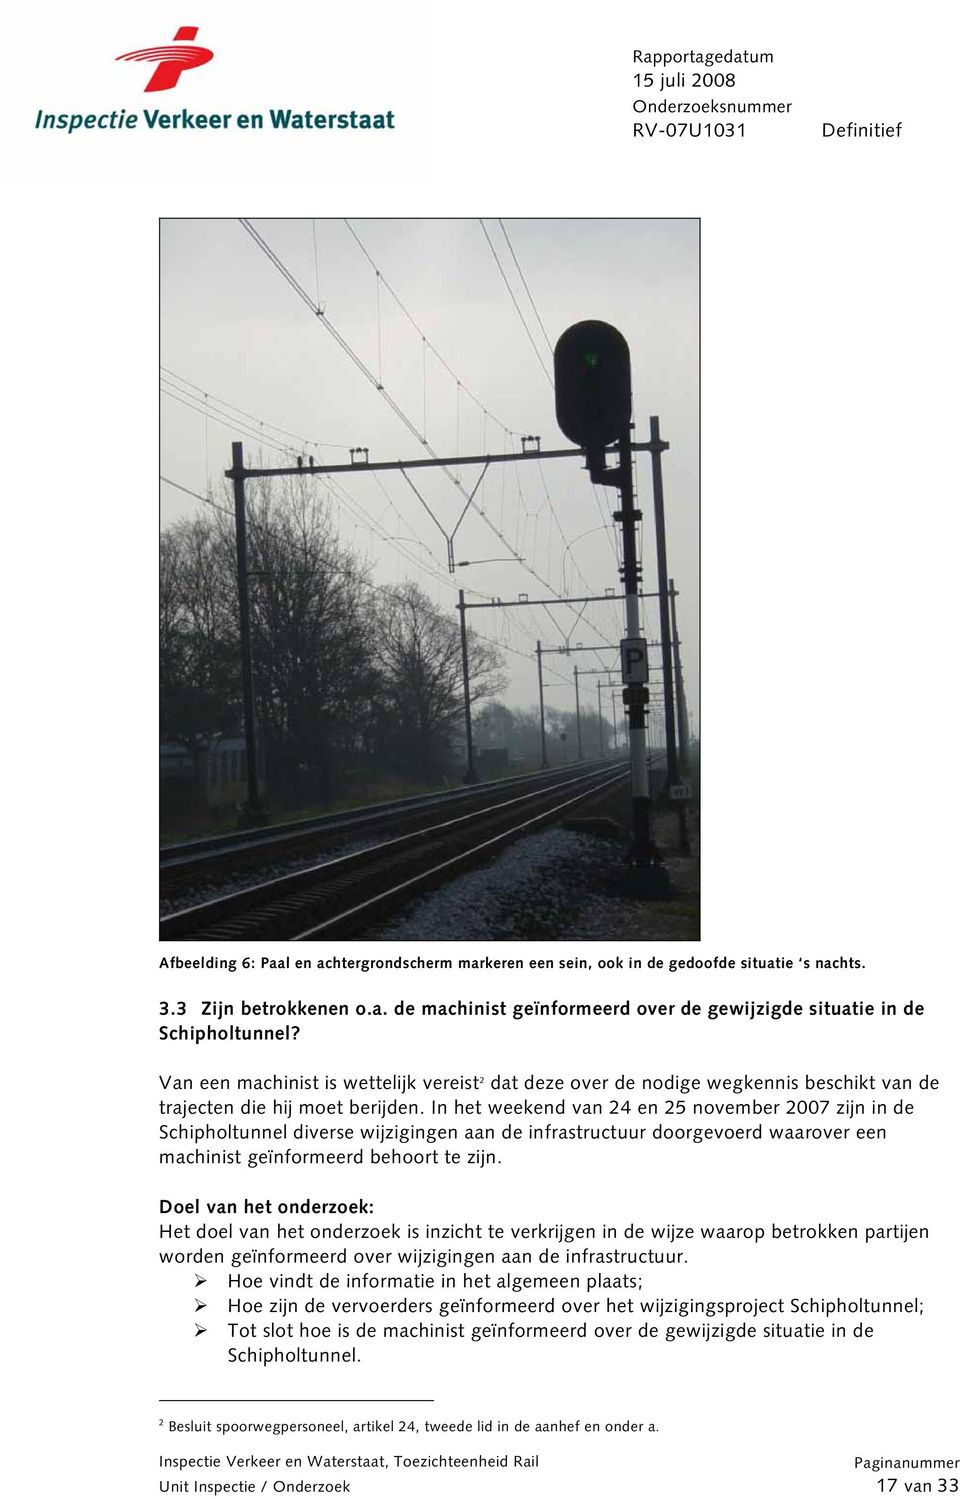 In het weekend van 24 en 25 november 2007 zijn in de Schipholtunnel diverse wijzigingen aan de infrastructuur doorgevoerd waarover een machinist geïnformeerd behoort te zijn.